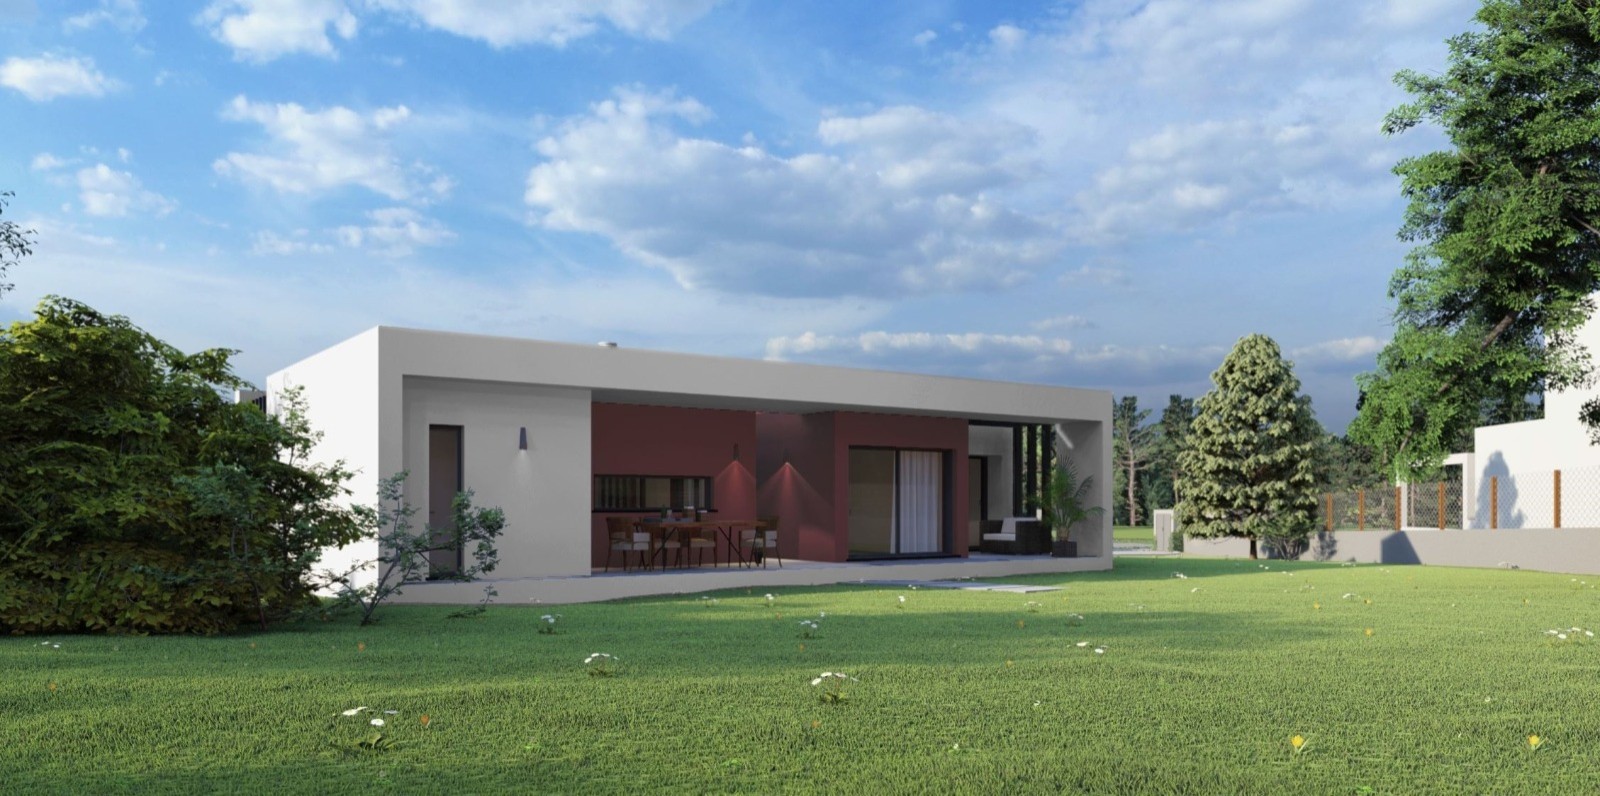 Building land, for sale, in Golf Resort - Algarve_215509